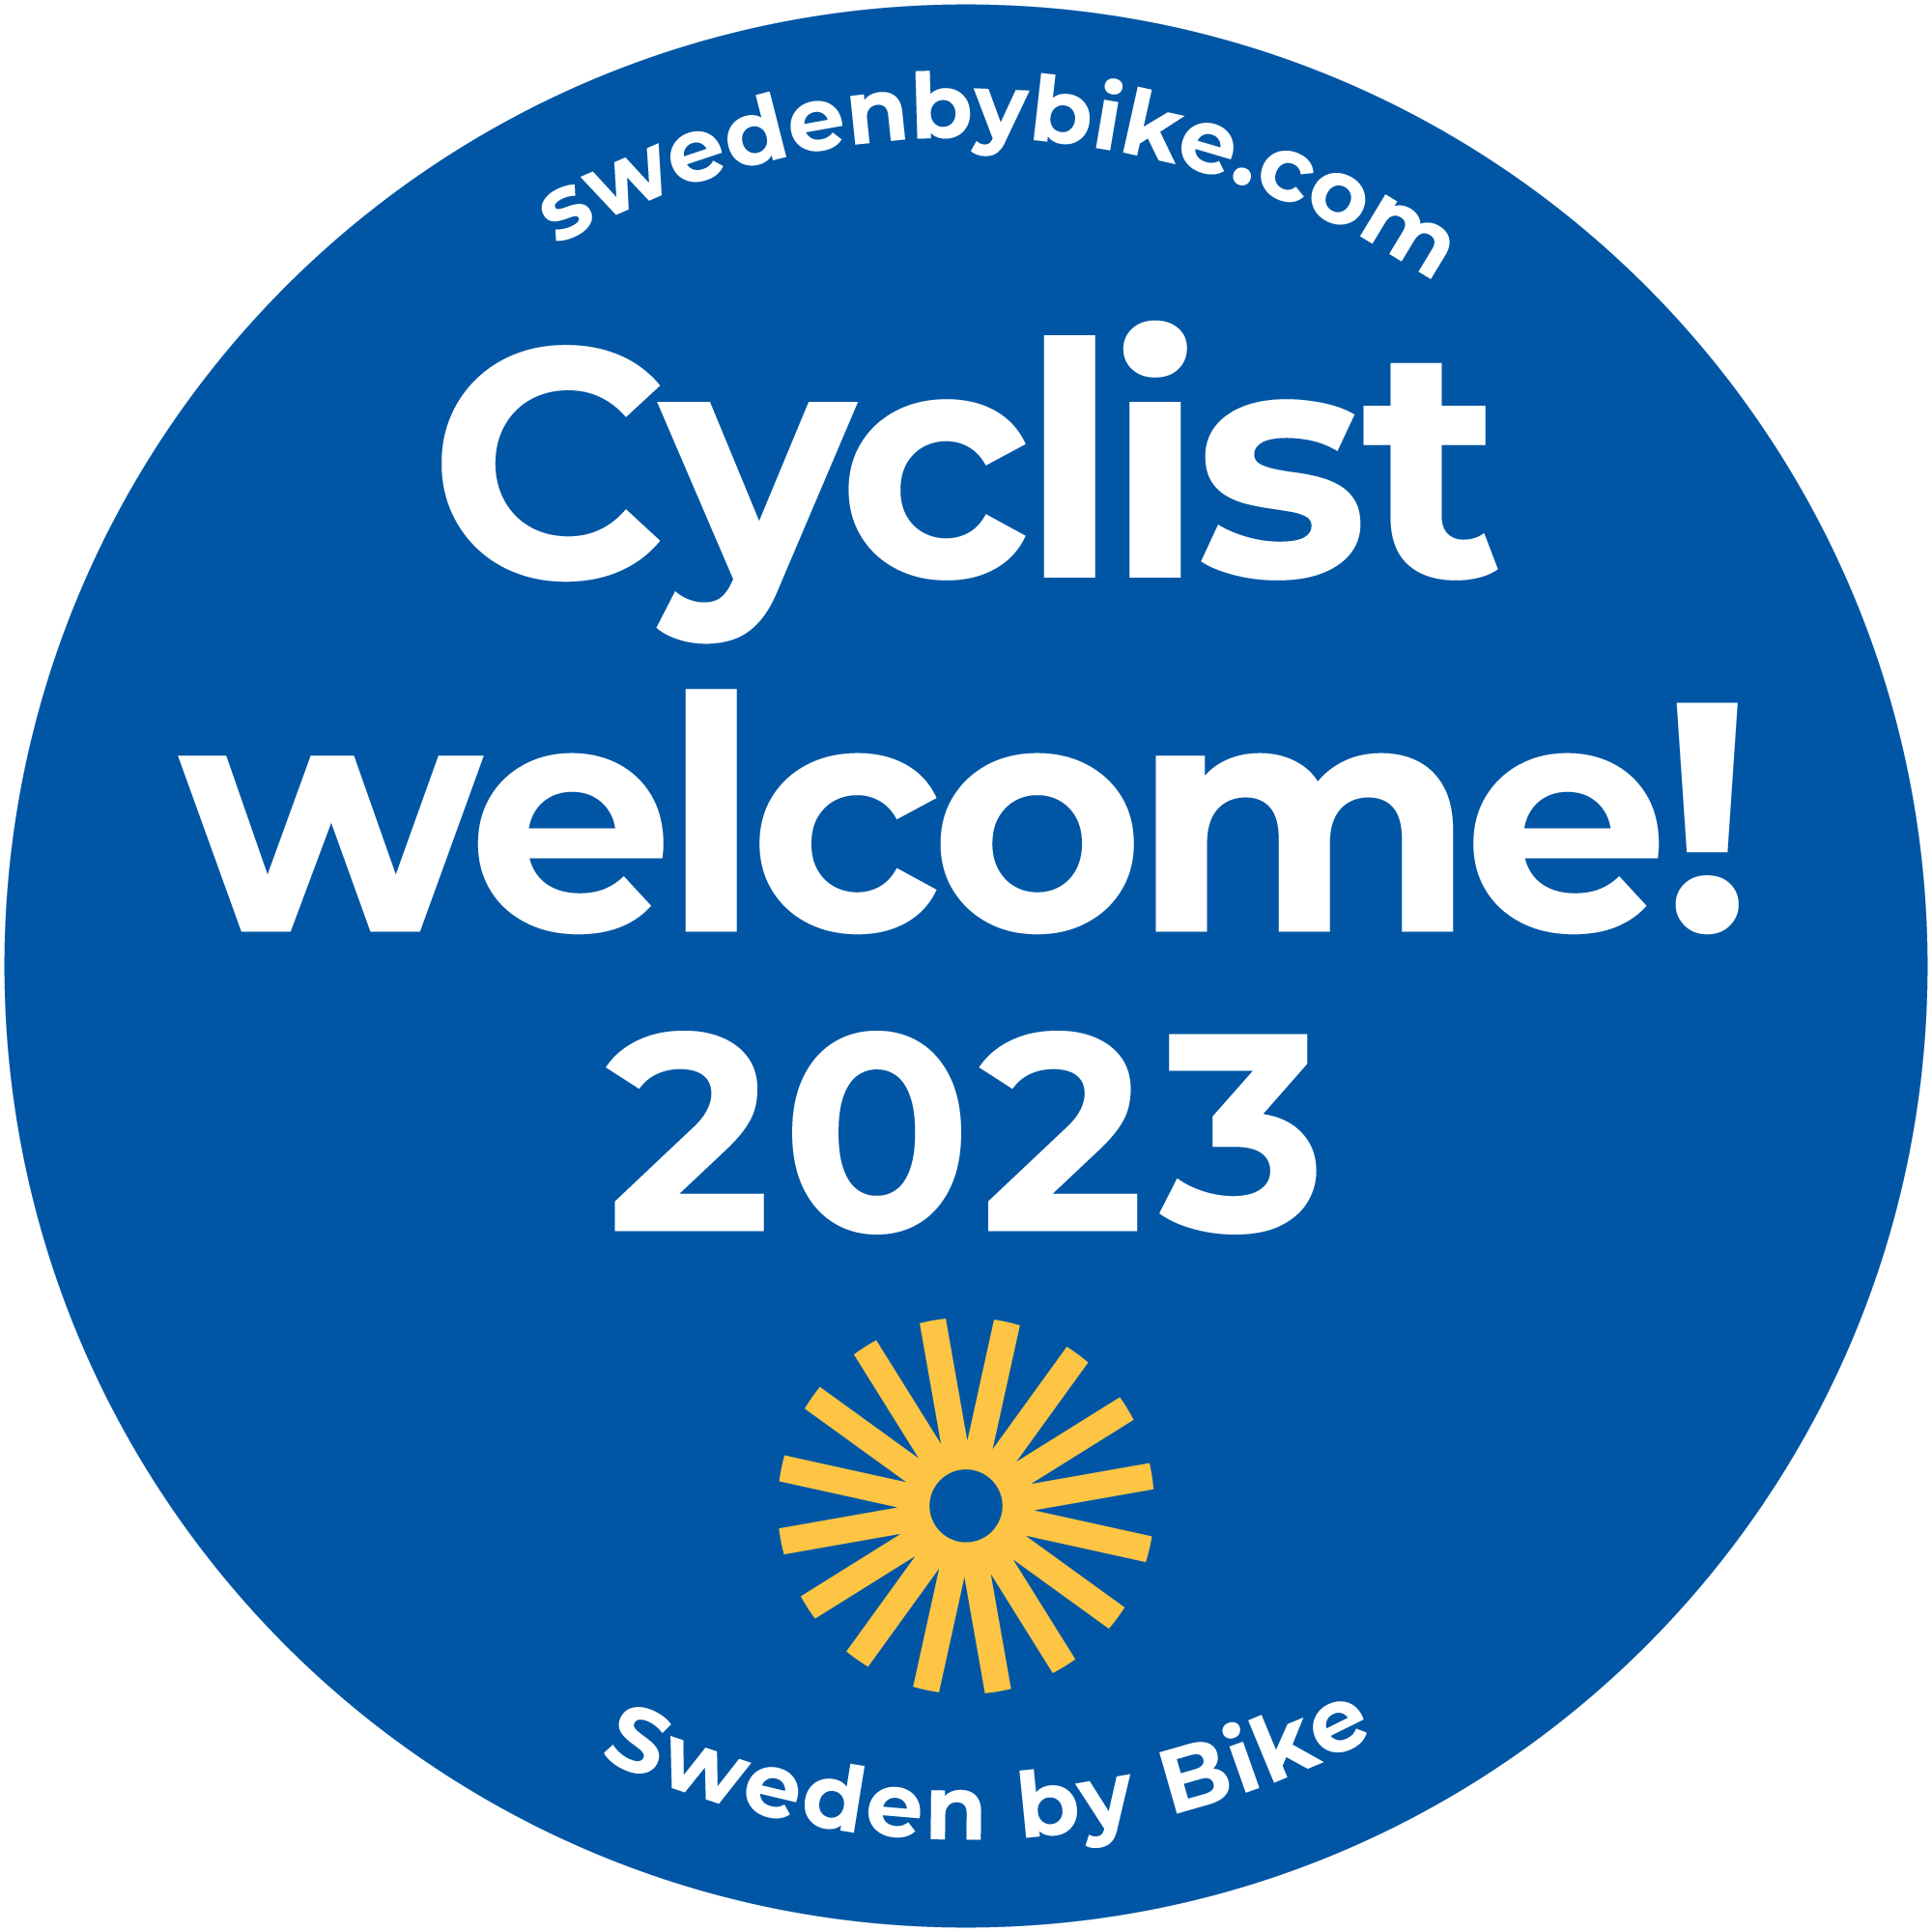 Sweden by bike logo